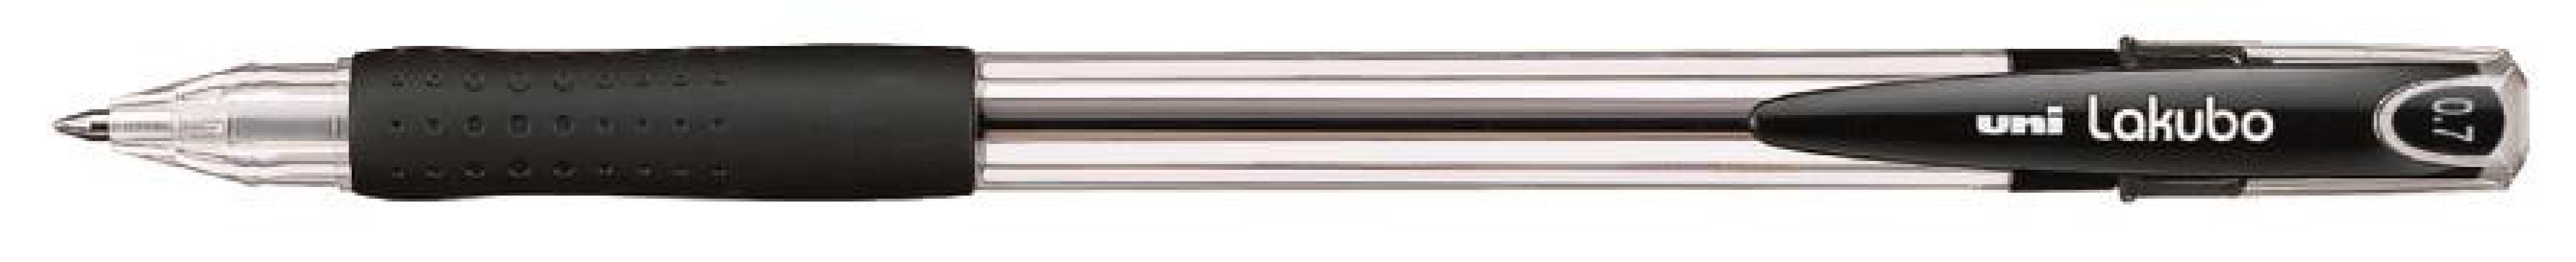 Στυλό Διαρκείας Lakubo 0.7mm. Black SG-100 Uni